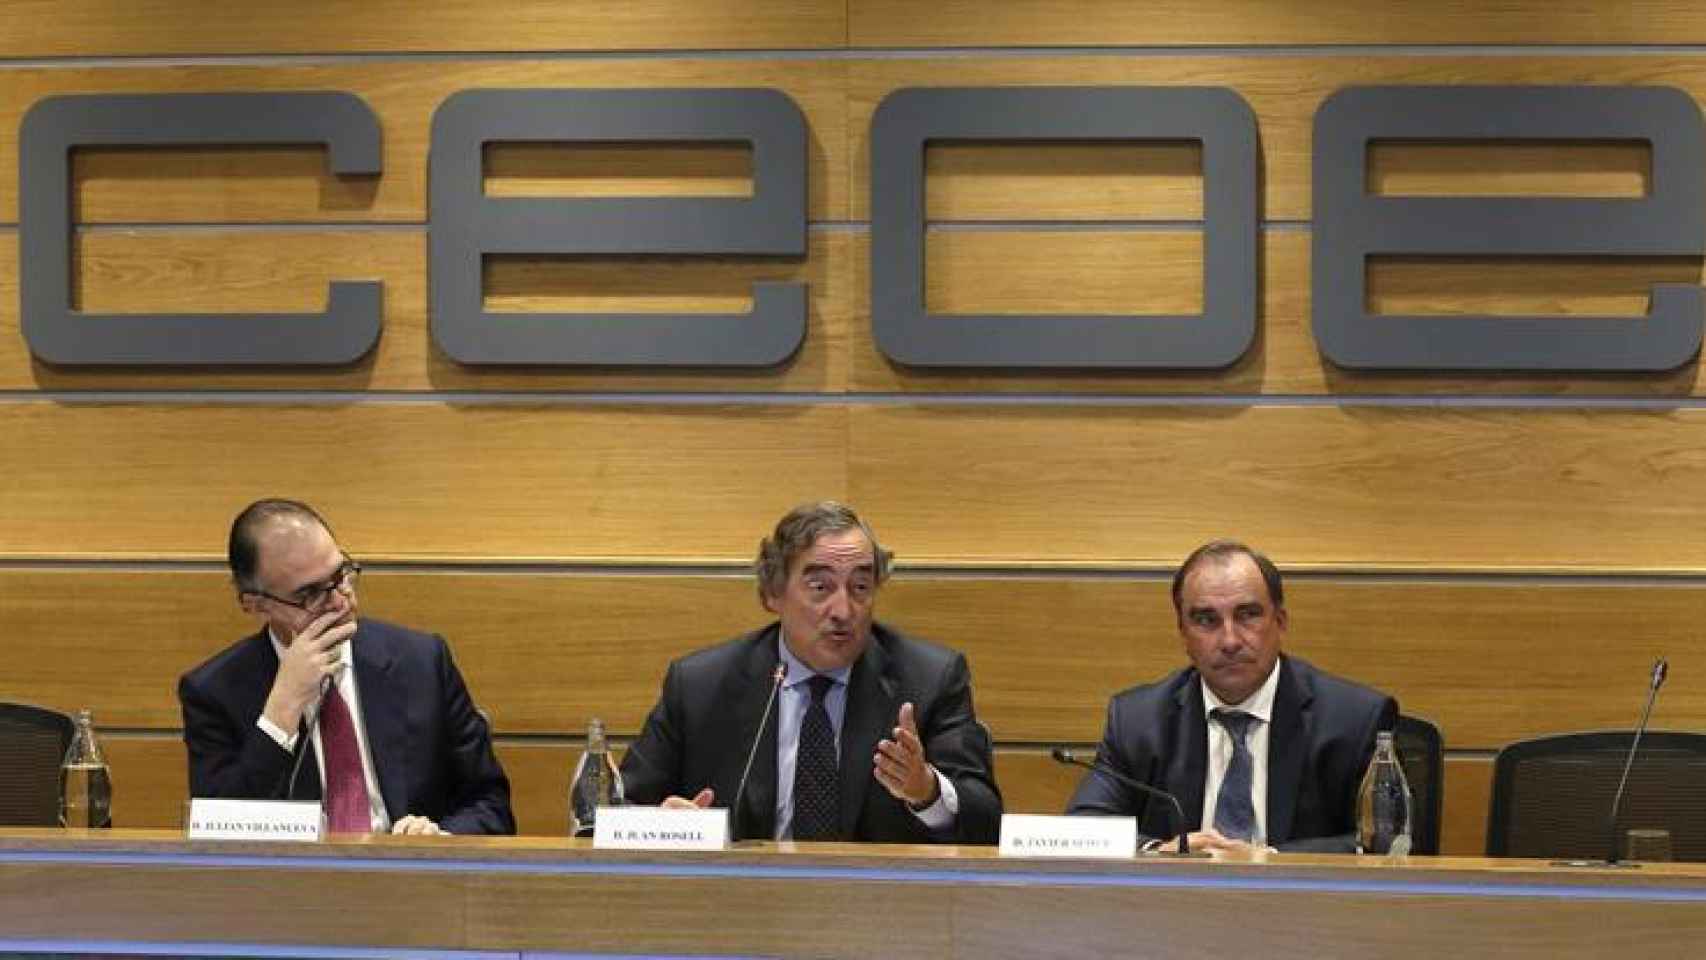 La Junta Directiva de CEOE se posiciona ante la situación de Cataluña.